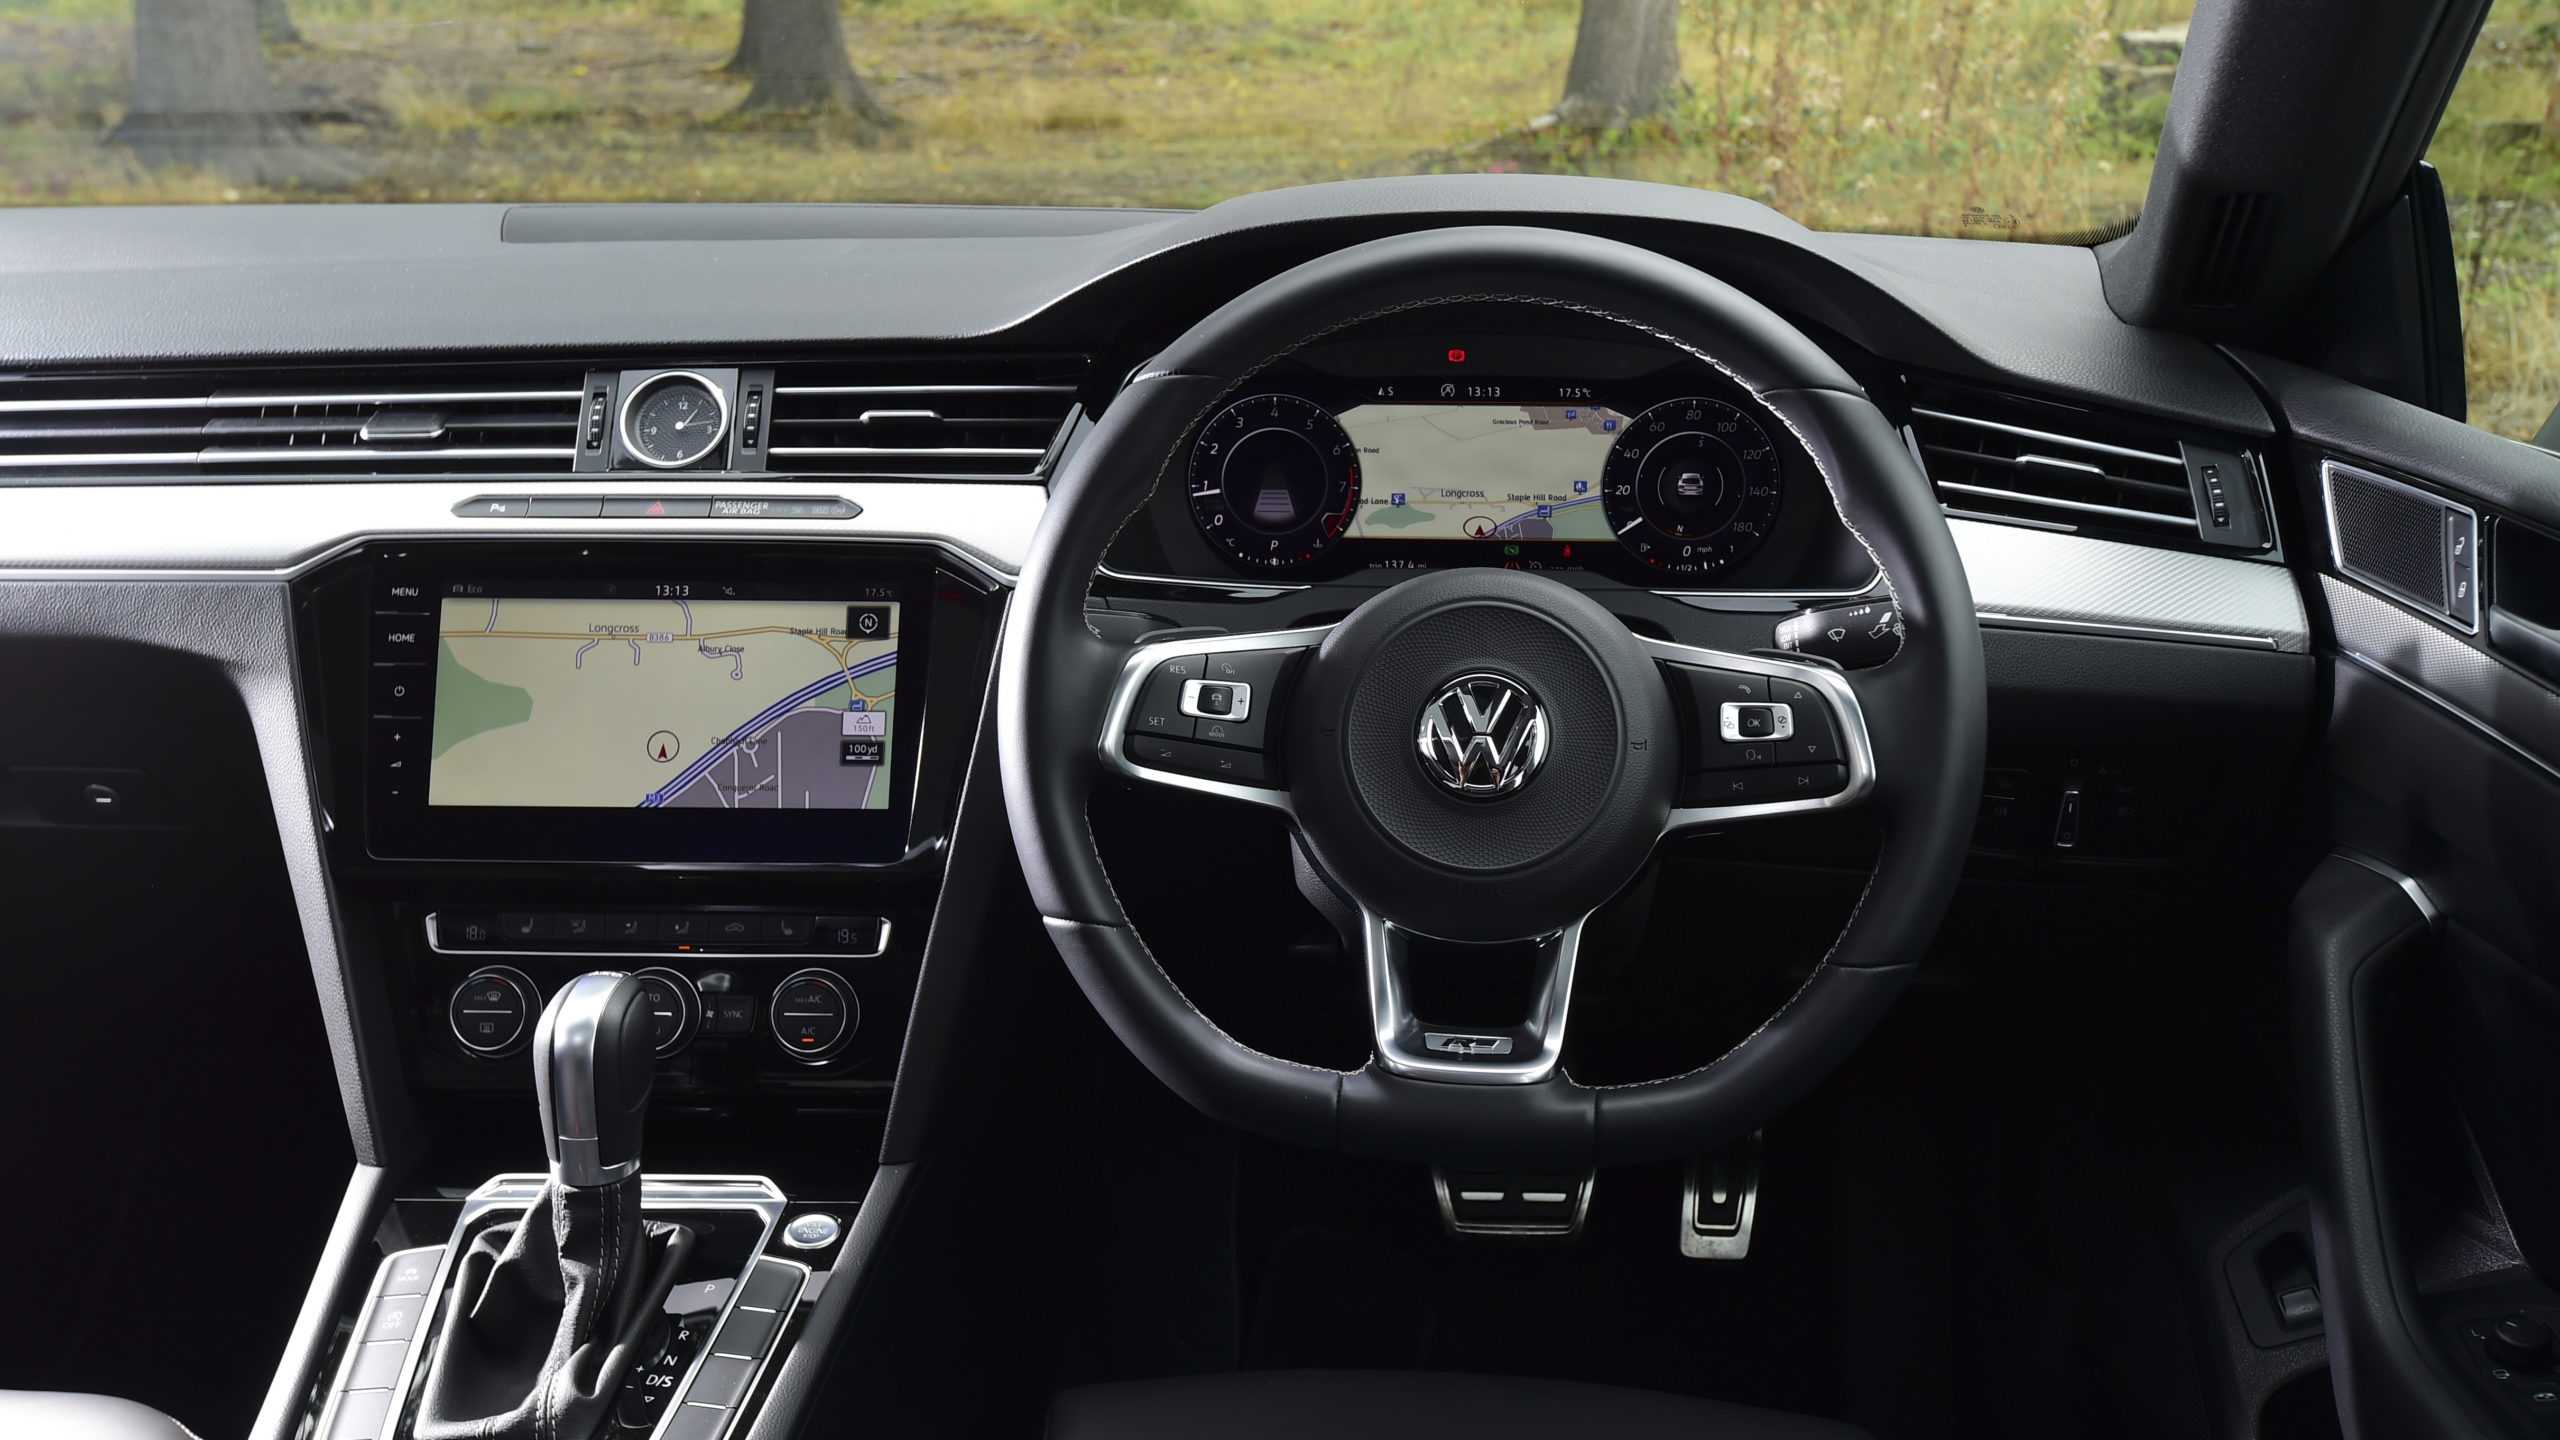 Inside the Volkswagen Arteon, the best and most advanced Volkswagen yet